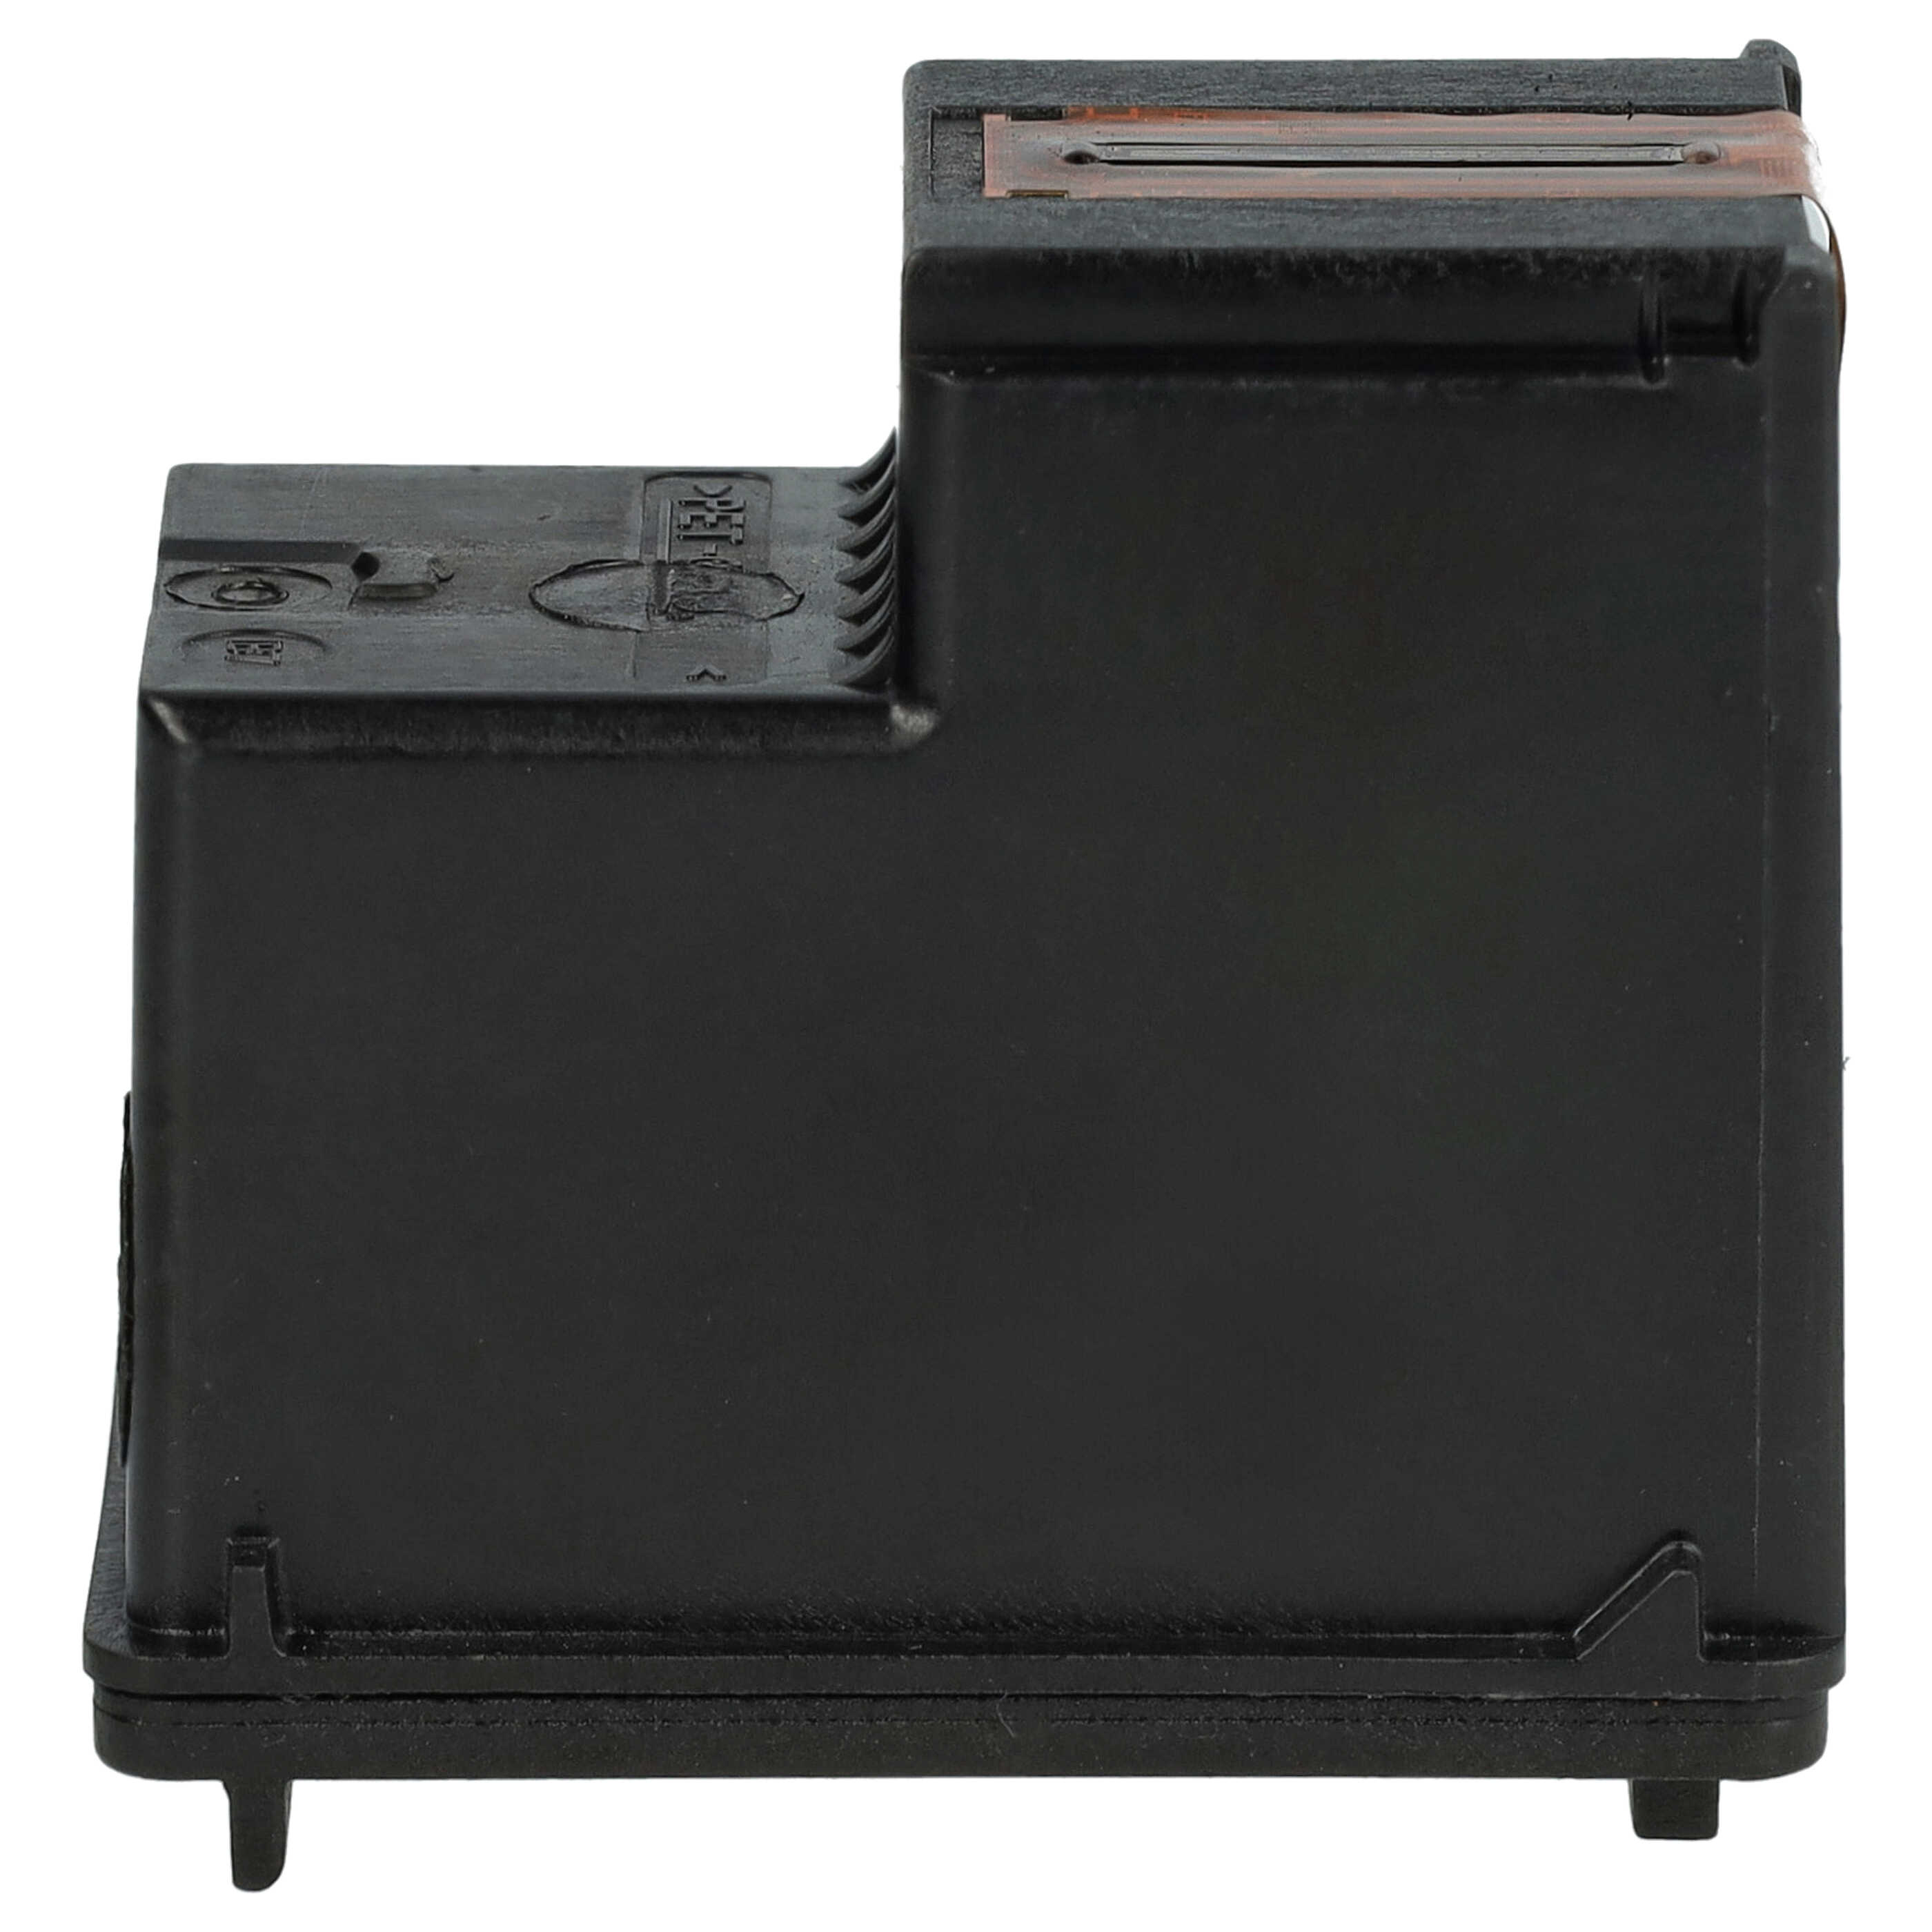 Tintenpatrone passend für Officejet HP Drucker - Schwarz Wiederaufgefüllt 18ml